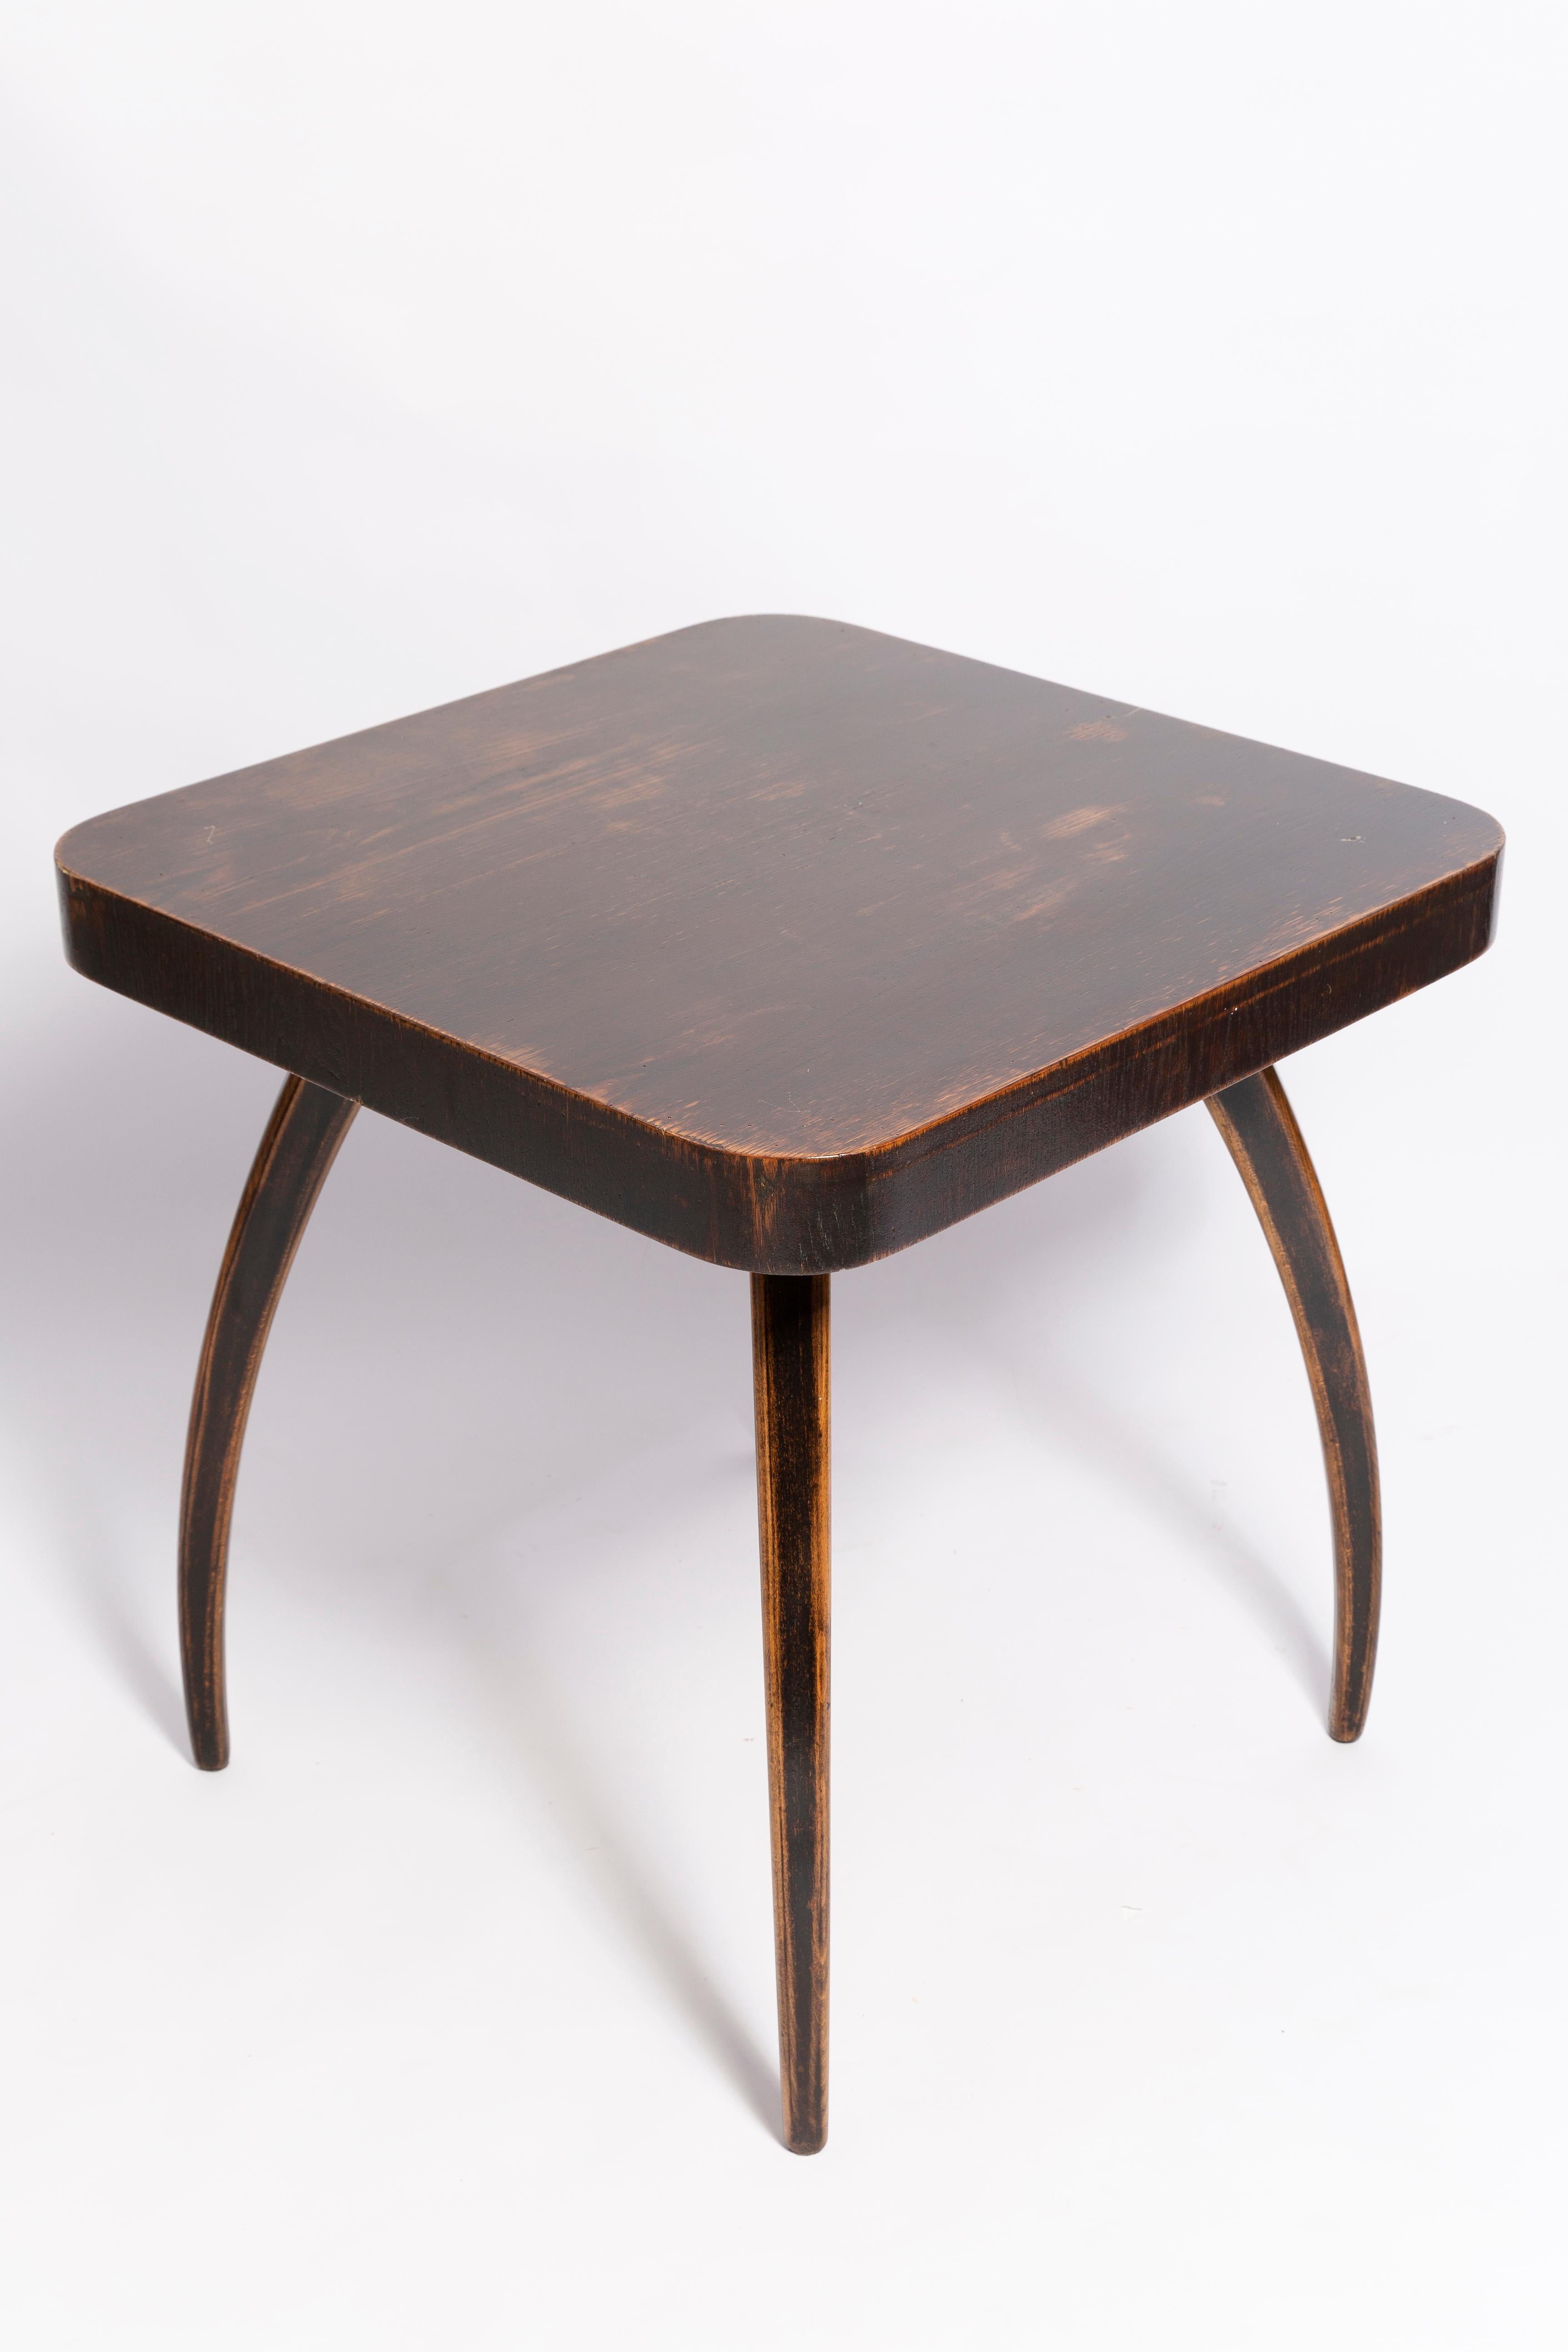 Art Deco Couchtisch, entworfen 1960 von Jindrich Halabala. Der Tisch ist vollständig restauriert. Wir haben seidenmattes Walnussfurnier verwendet. Es wurde in der Tschechischen Republik hergestellt. Nur ein einziges Exemplar verfügbar.

Über den